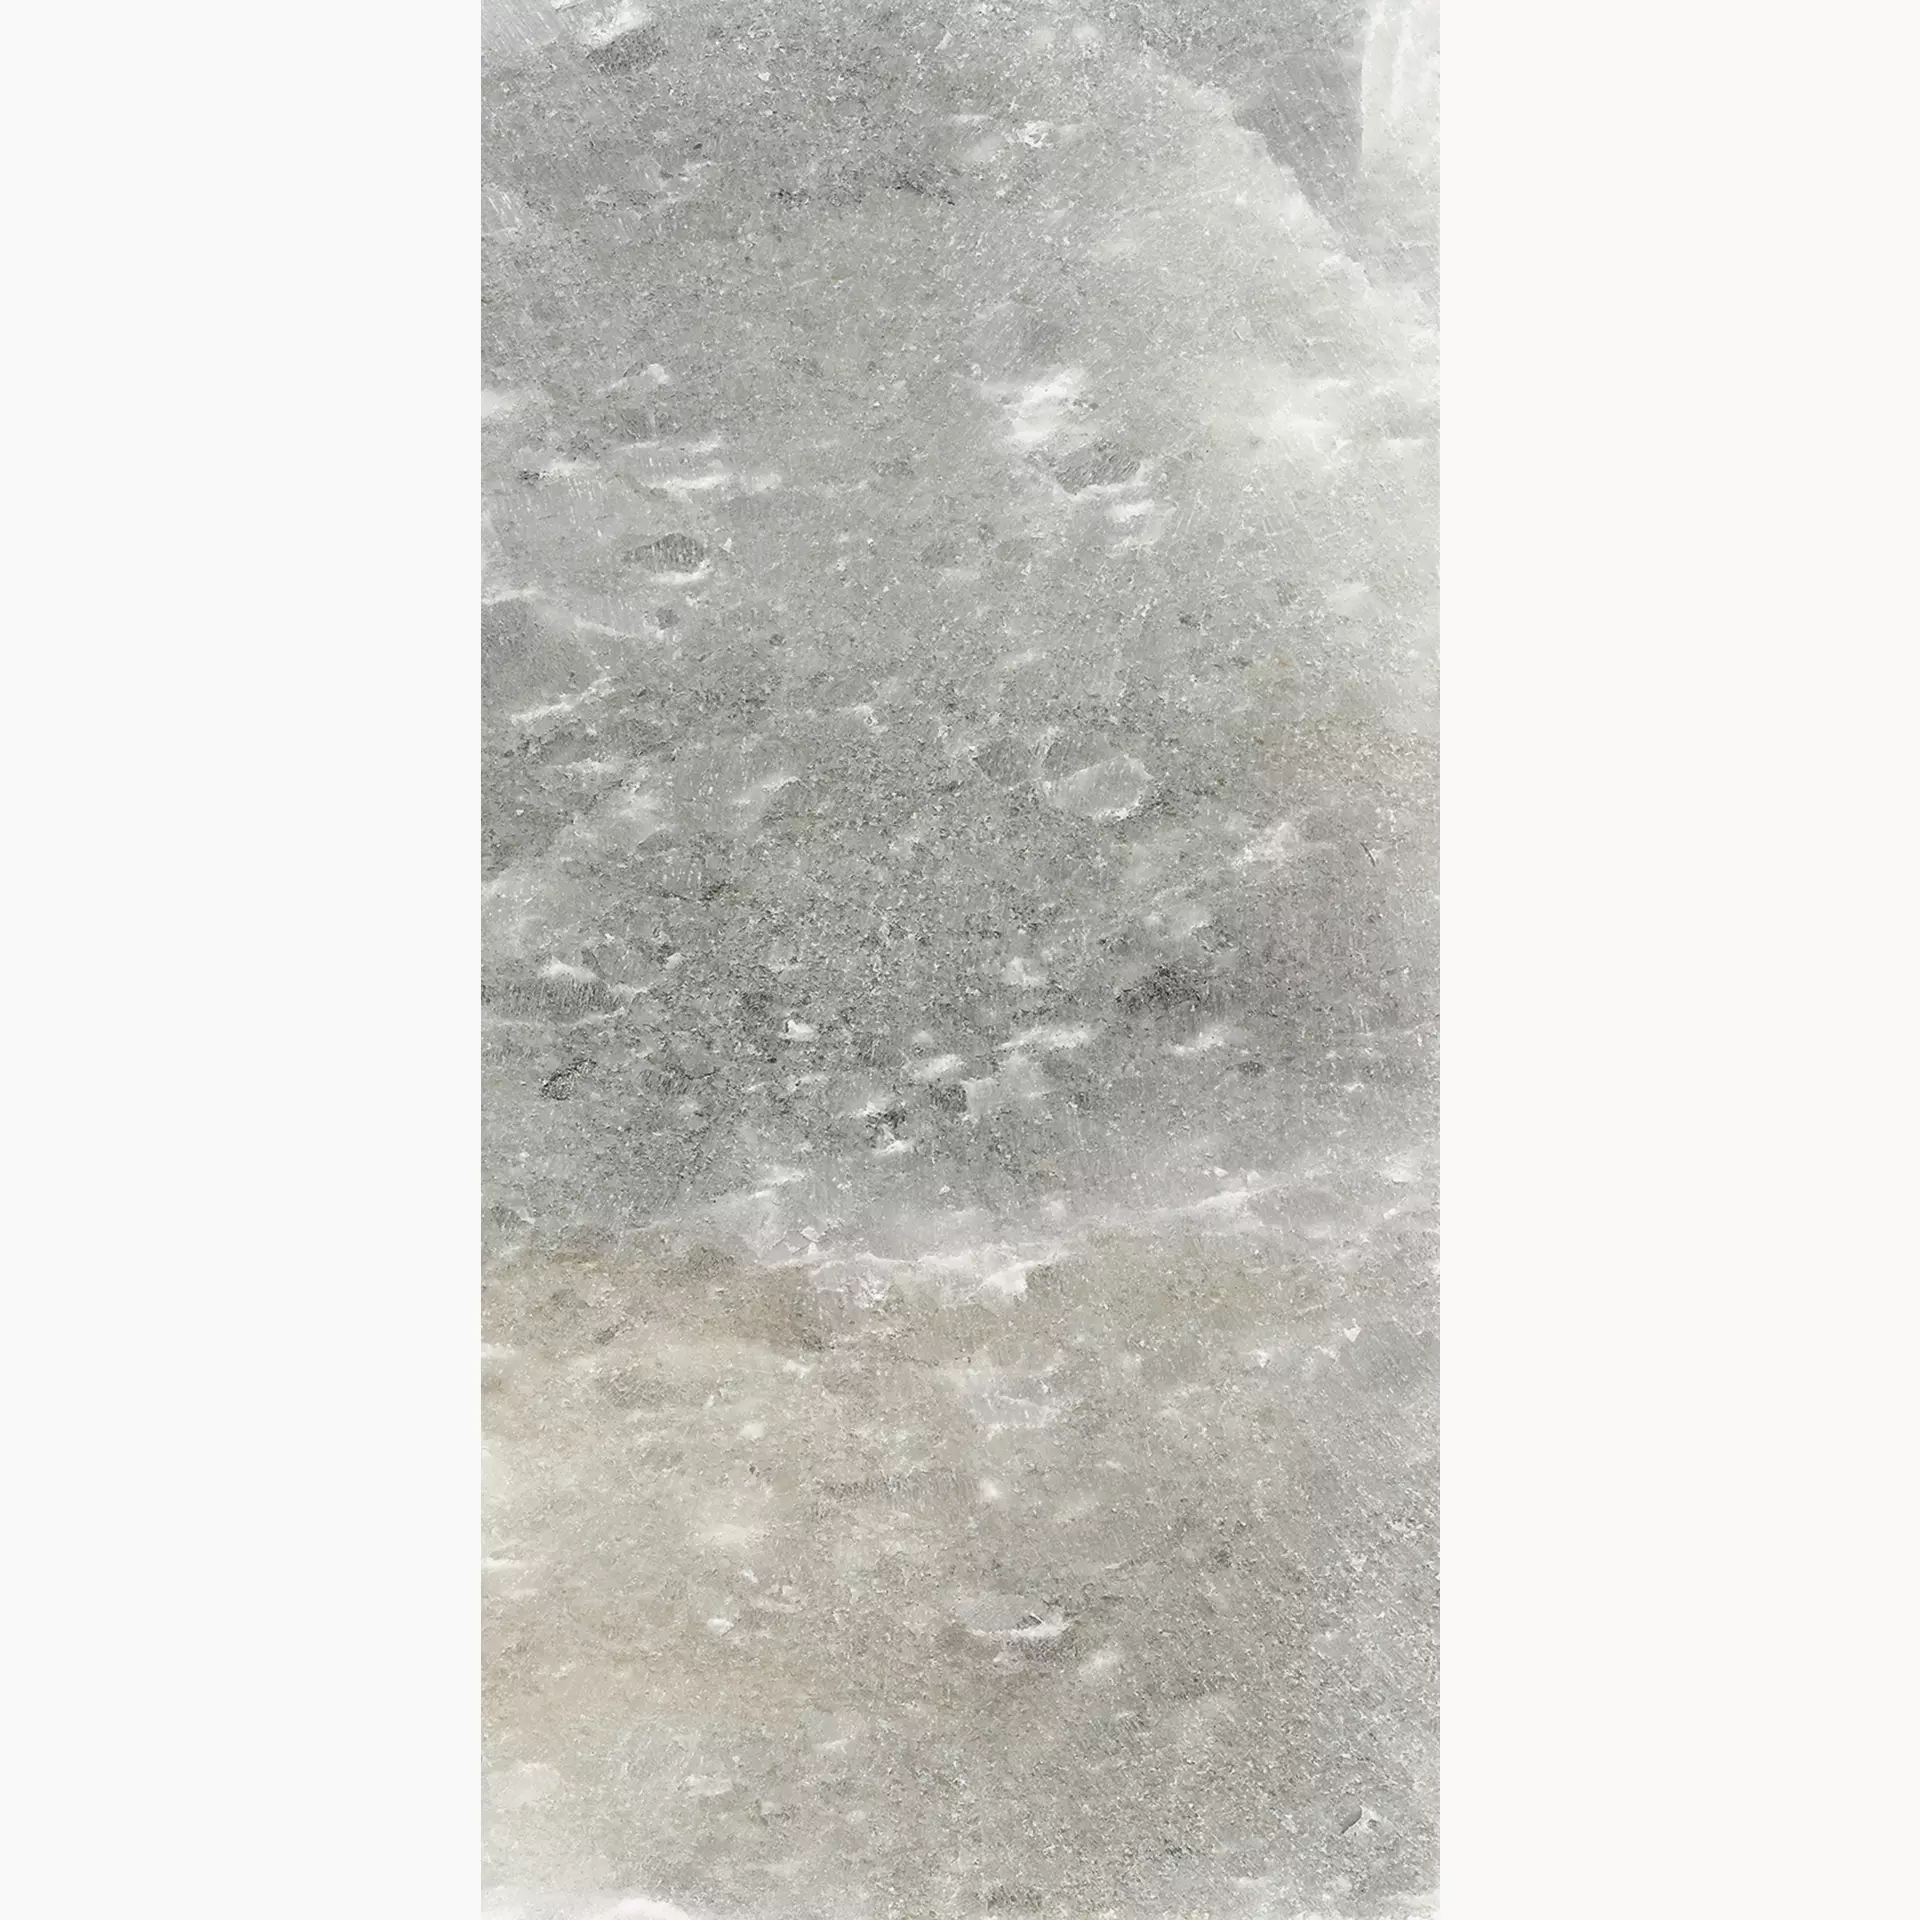 Florim Rock Salt Maui Green Lucido 765858 60x120cm rectified 9mm